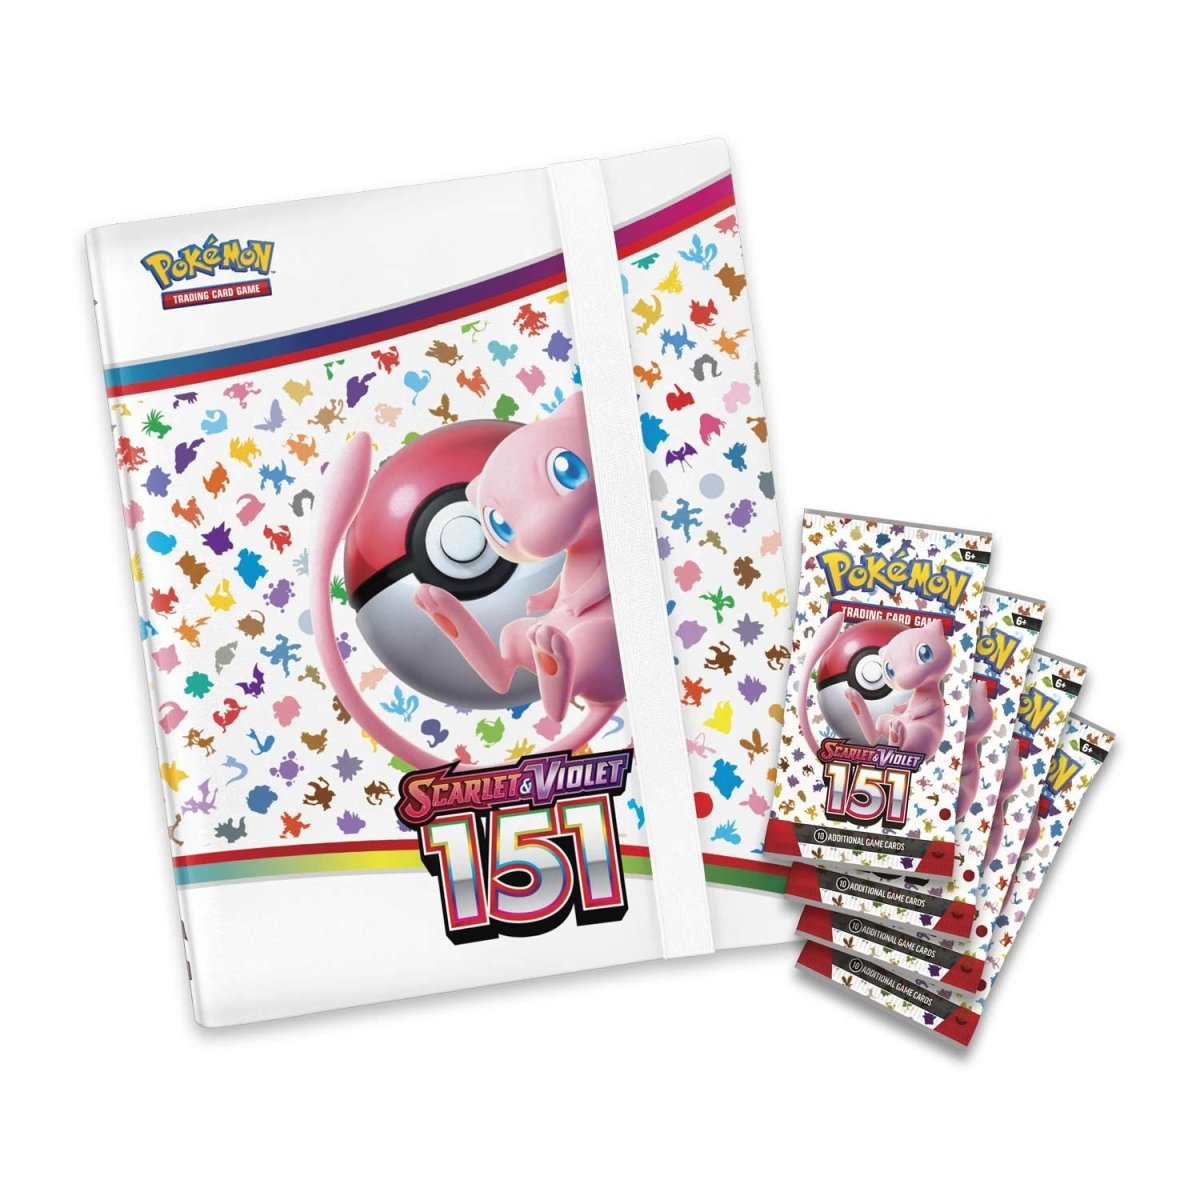 Pokémon Trading Card Game: Scarlet & Violet- 151 Binder Collection